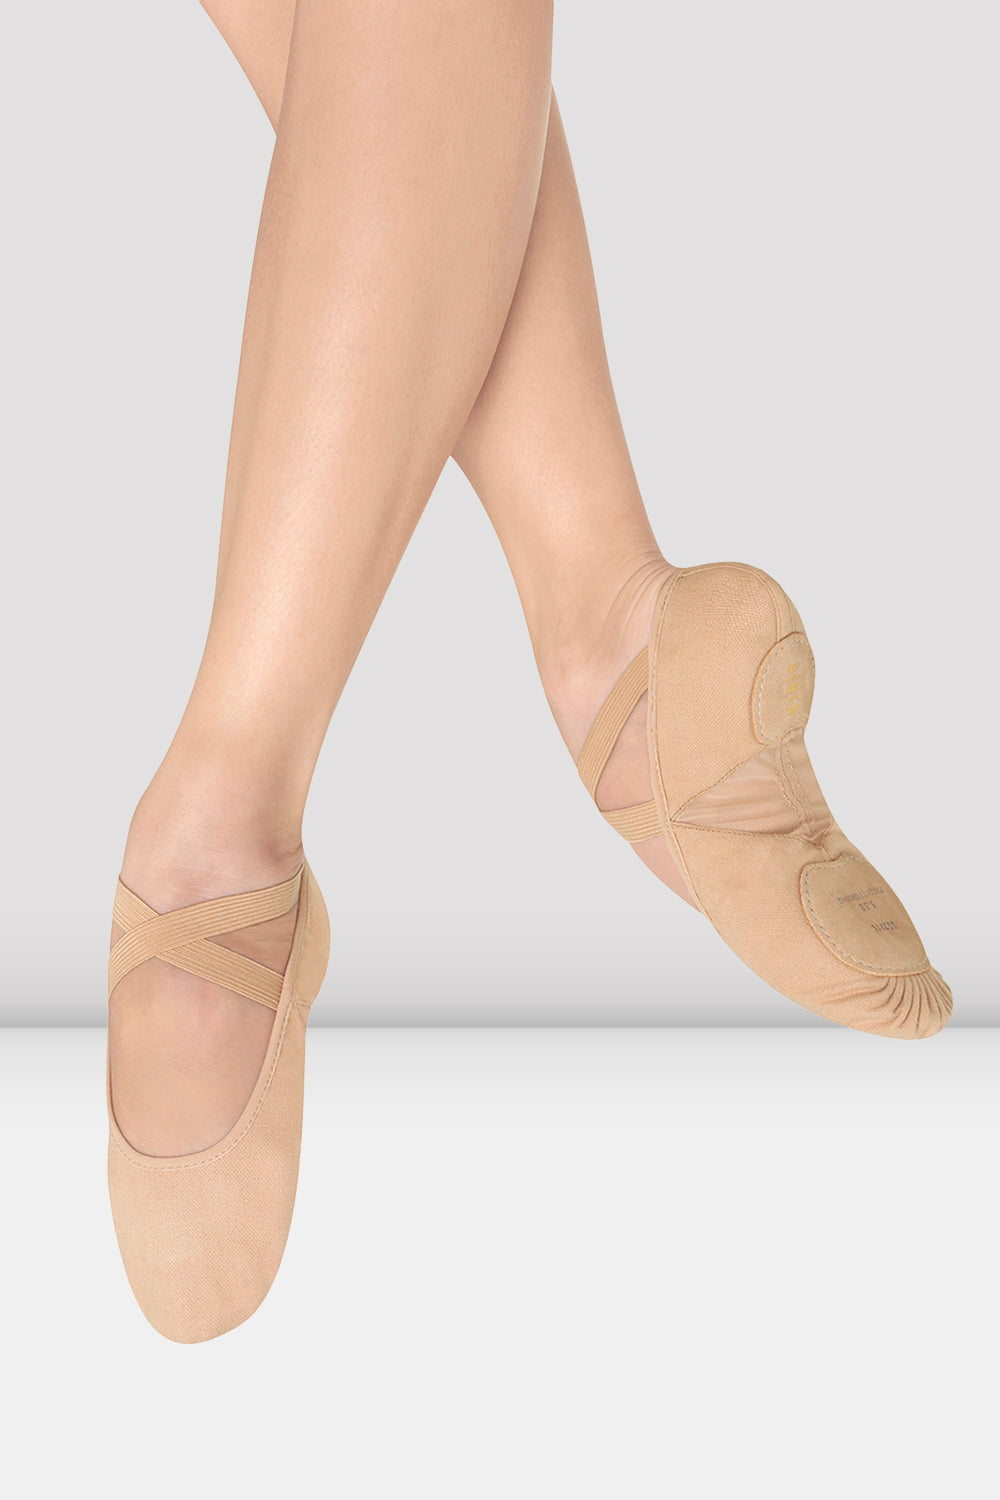 BLOCH Ladies Pro Arch Canvas Ballet Shoes, Light Sand Canvas